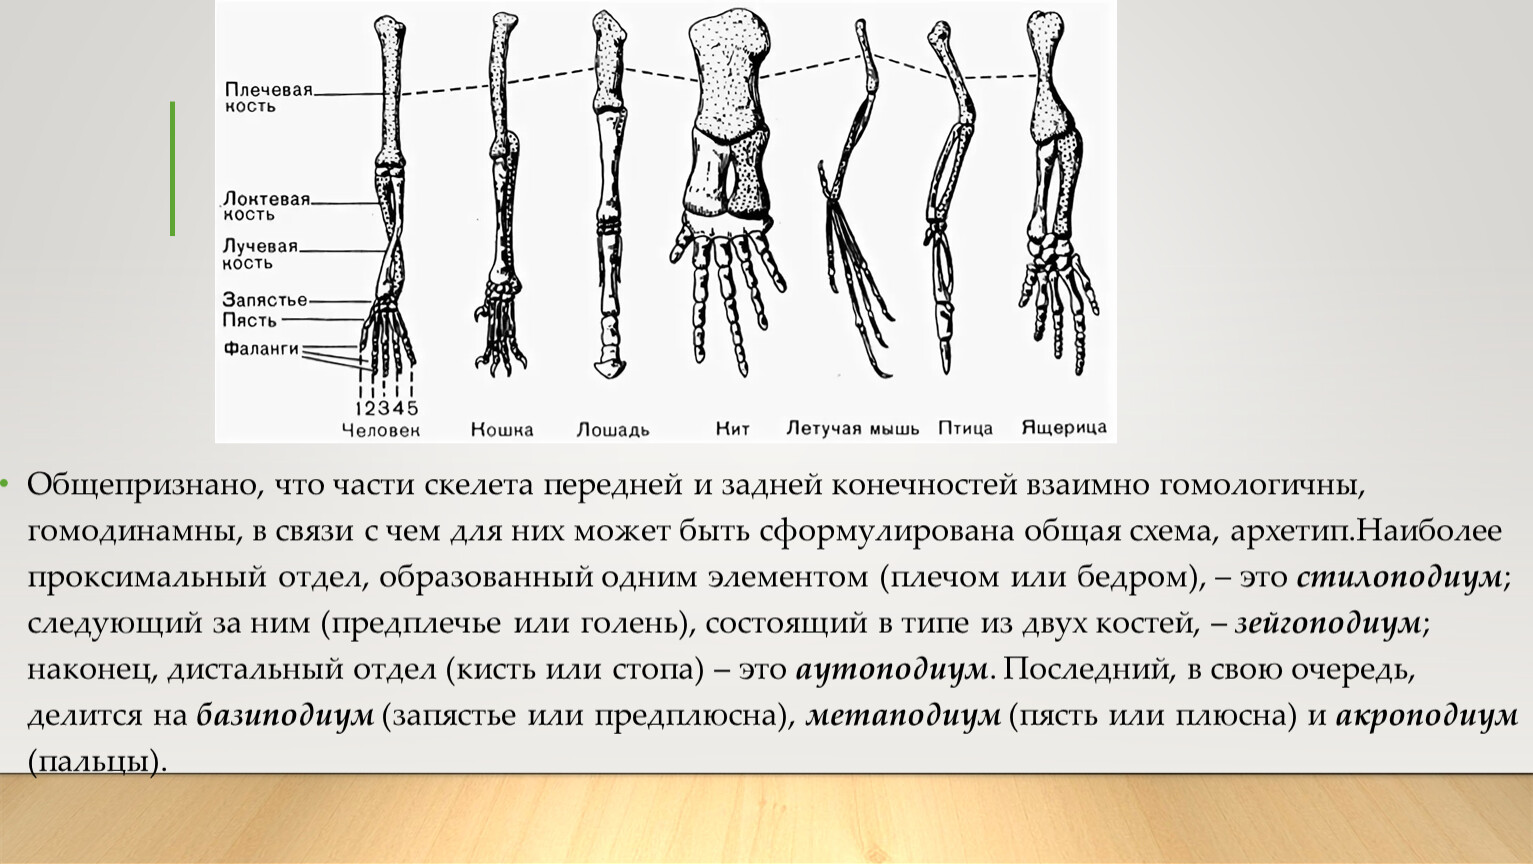 Скелет передних конечностей у млекопитающих